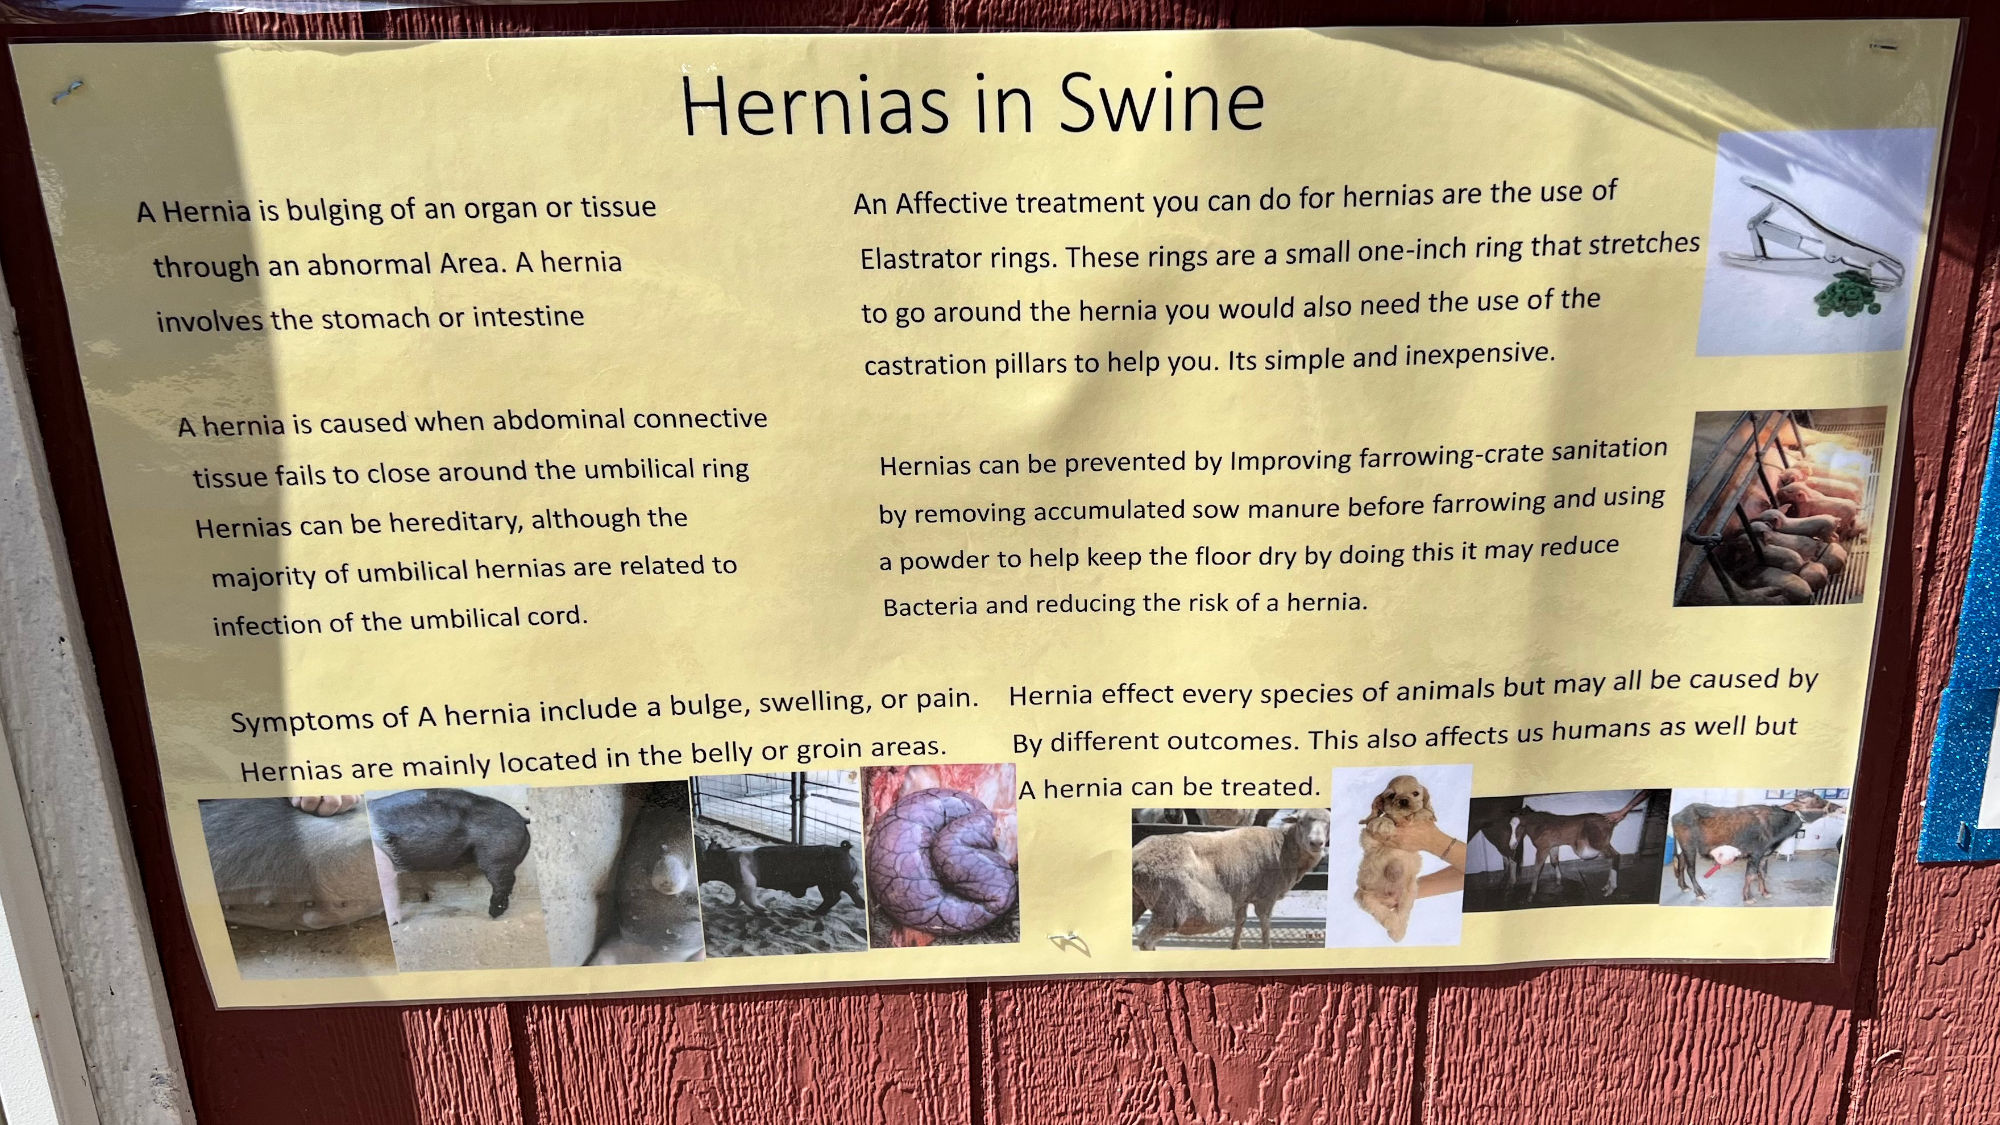 Hernias in Swine